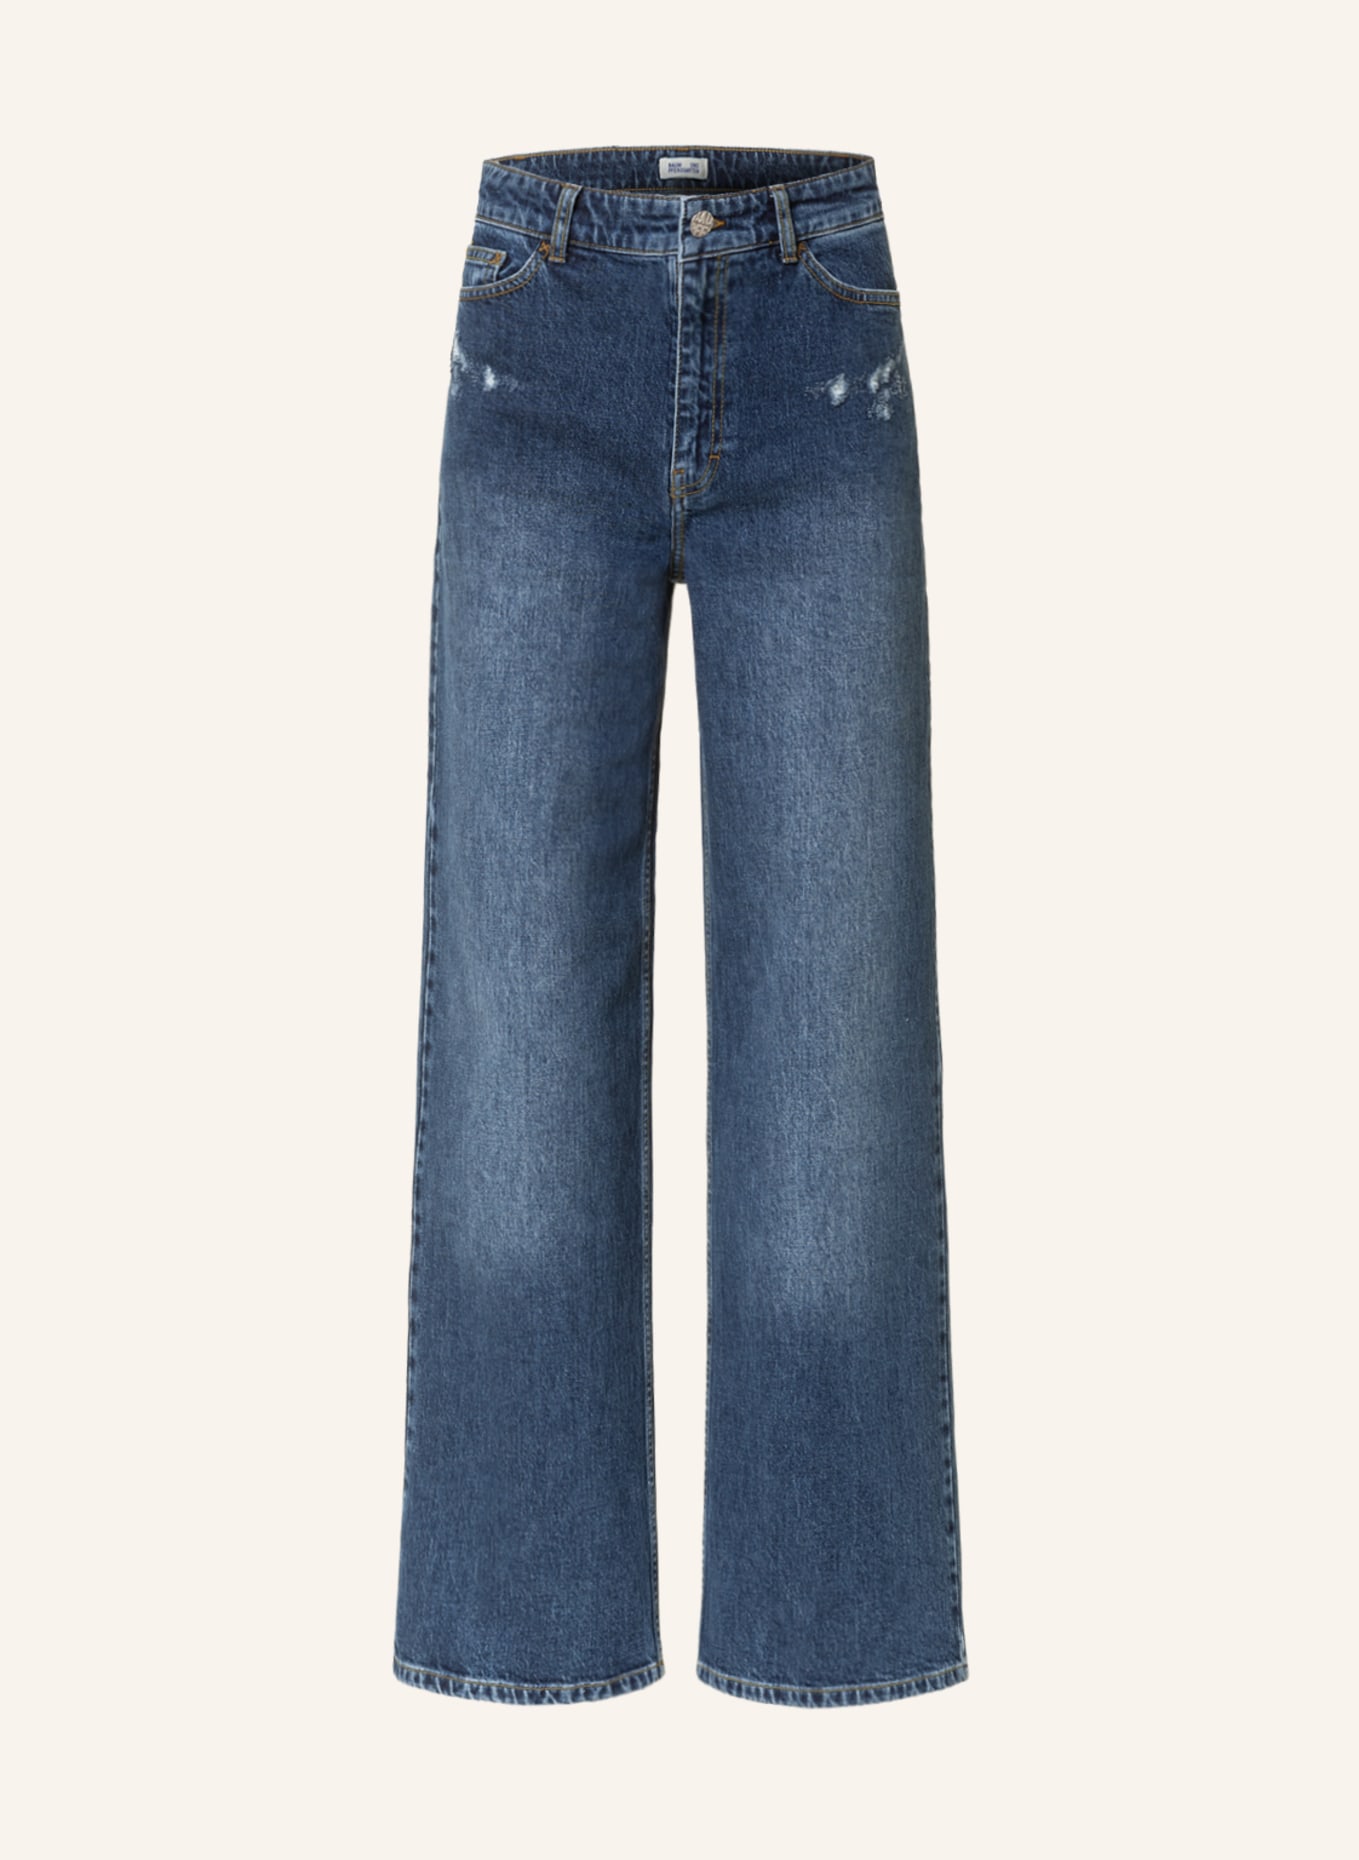 BAUM UND PFERDGARTEN Jeans NINI, Farbe: C6227 Washed Darkblue Denim (Bild 1)